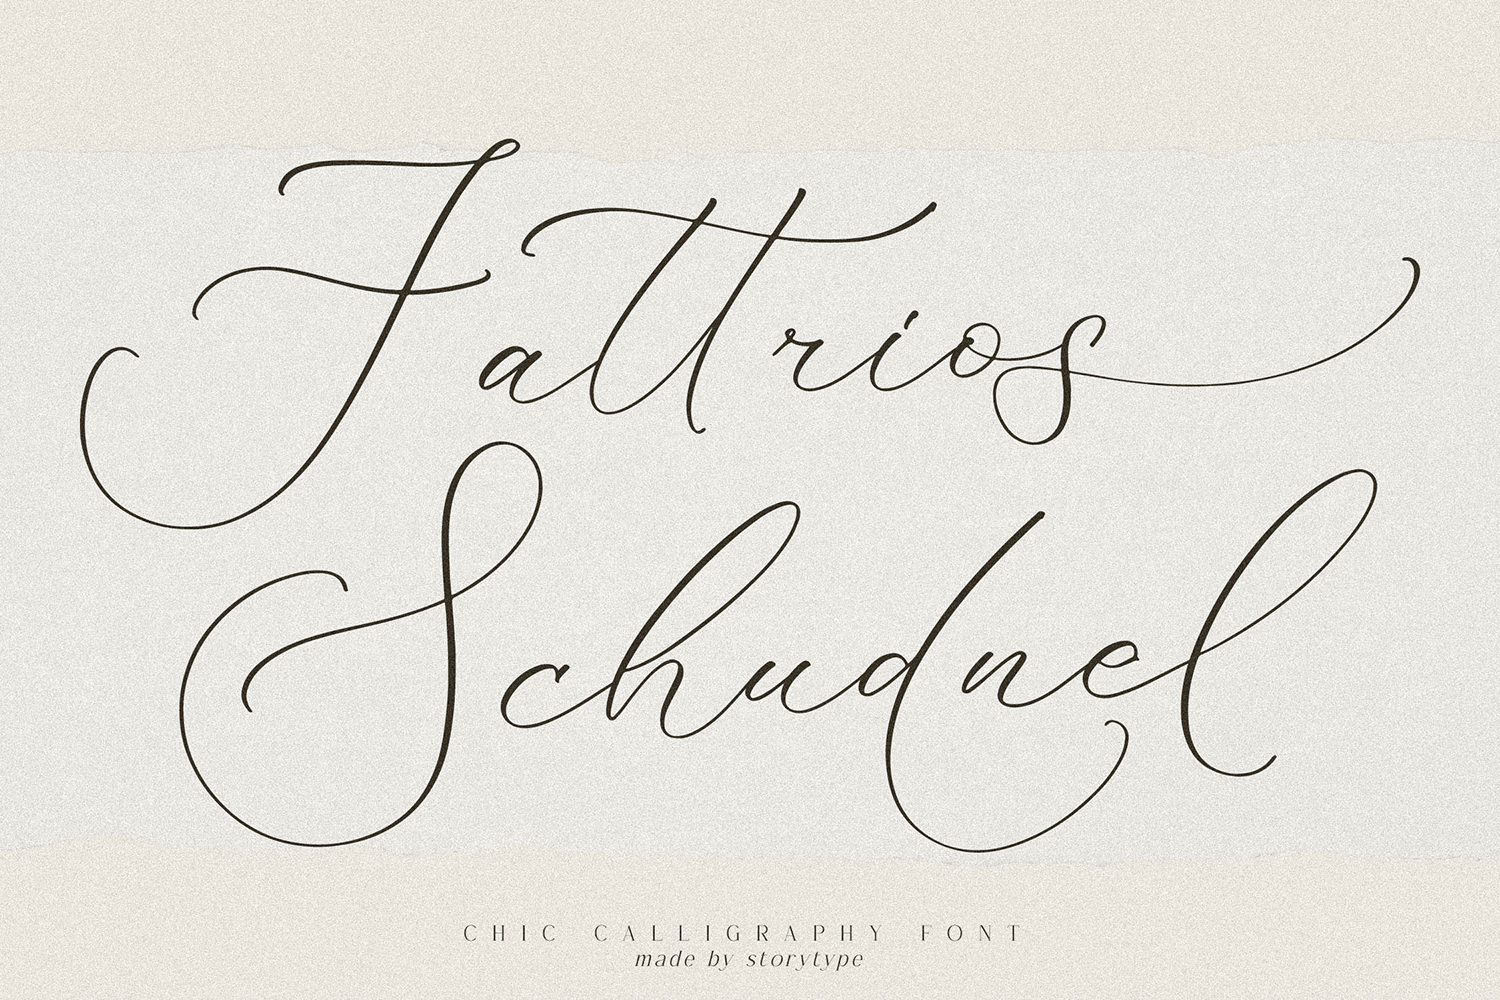 Fattrios Schudnel Free Font